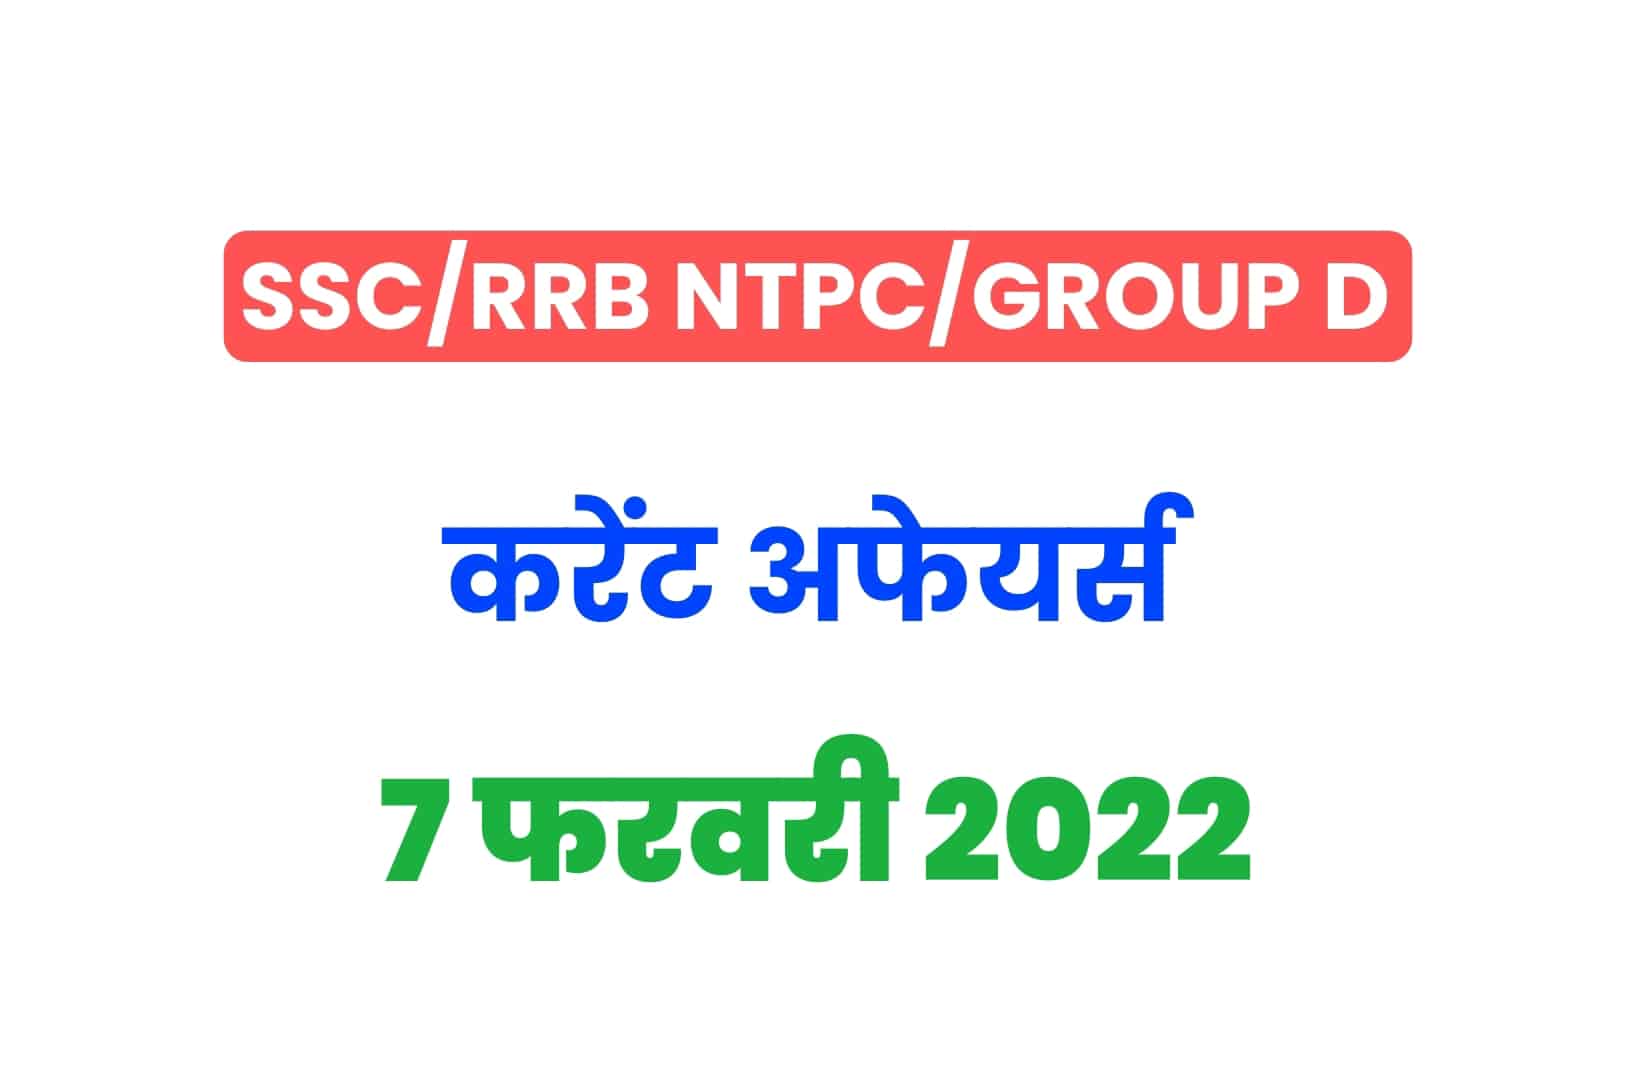 SSC/RRB Group D/NTPC Exam 2022: 7 फरवरी के 15 महत्वपूर्ण करेंट अफेयर्स के प्रश्न, जरूर पढ़ें